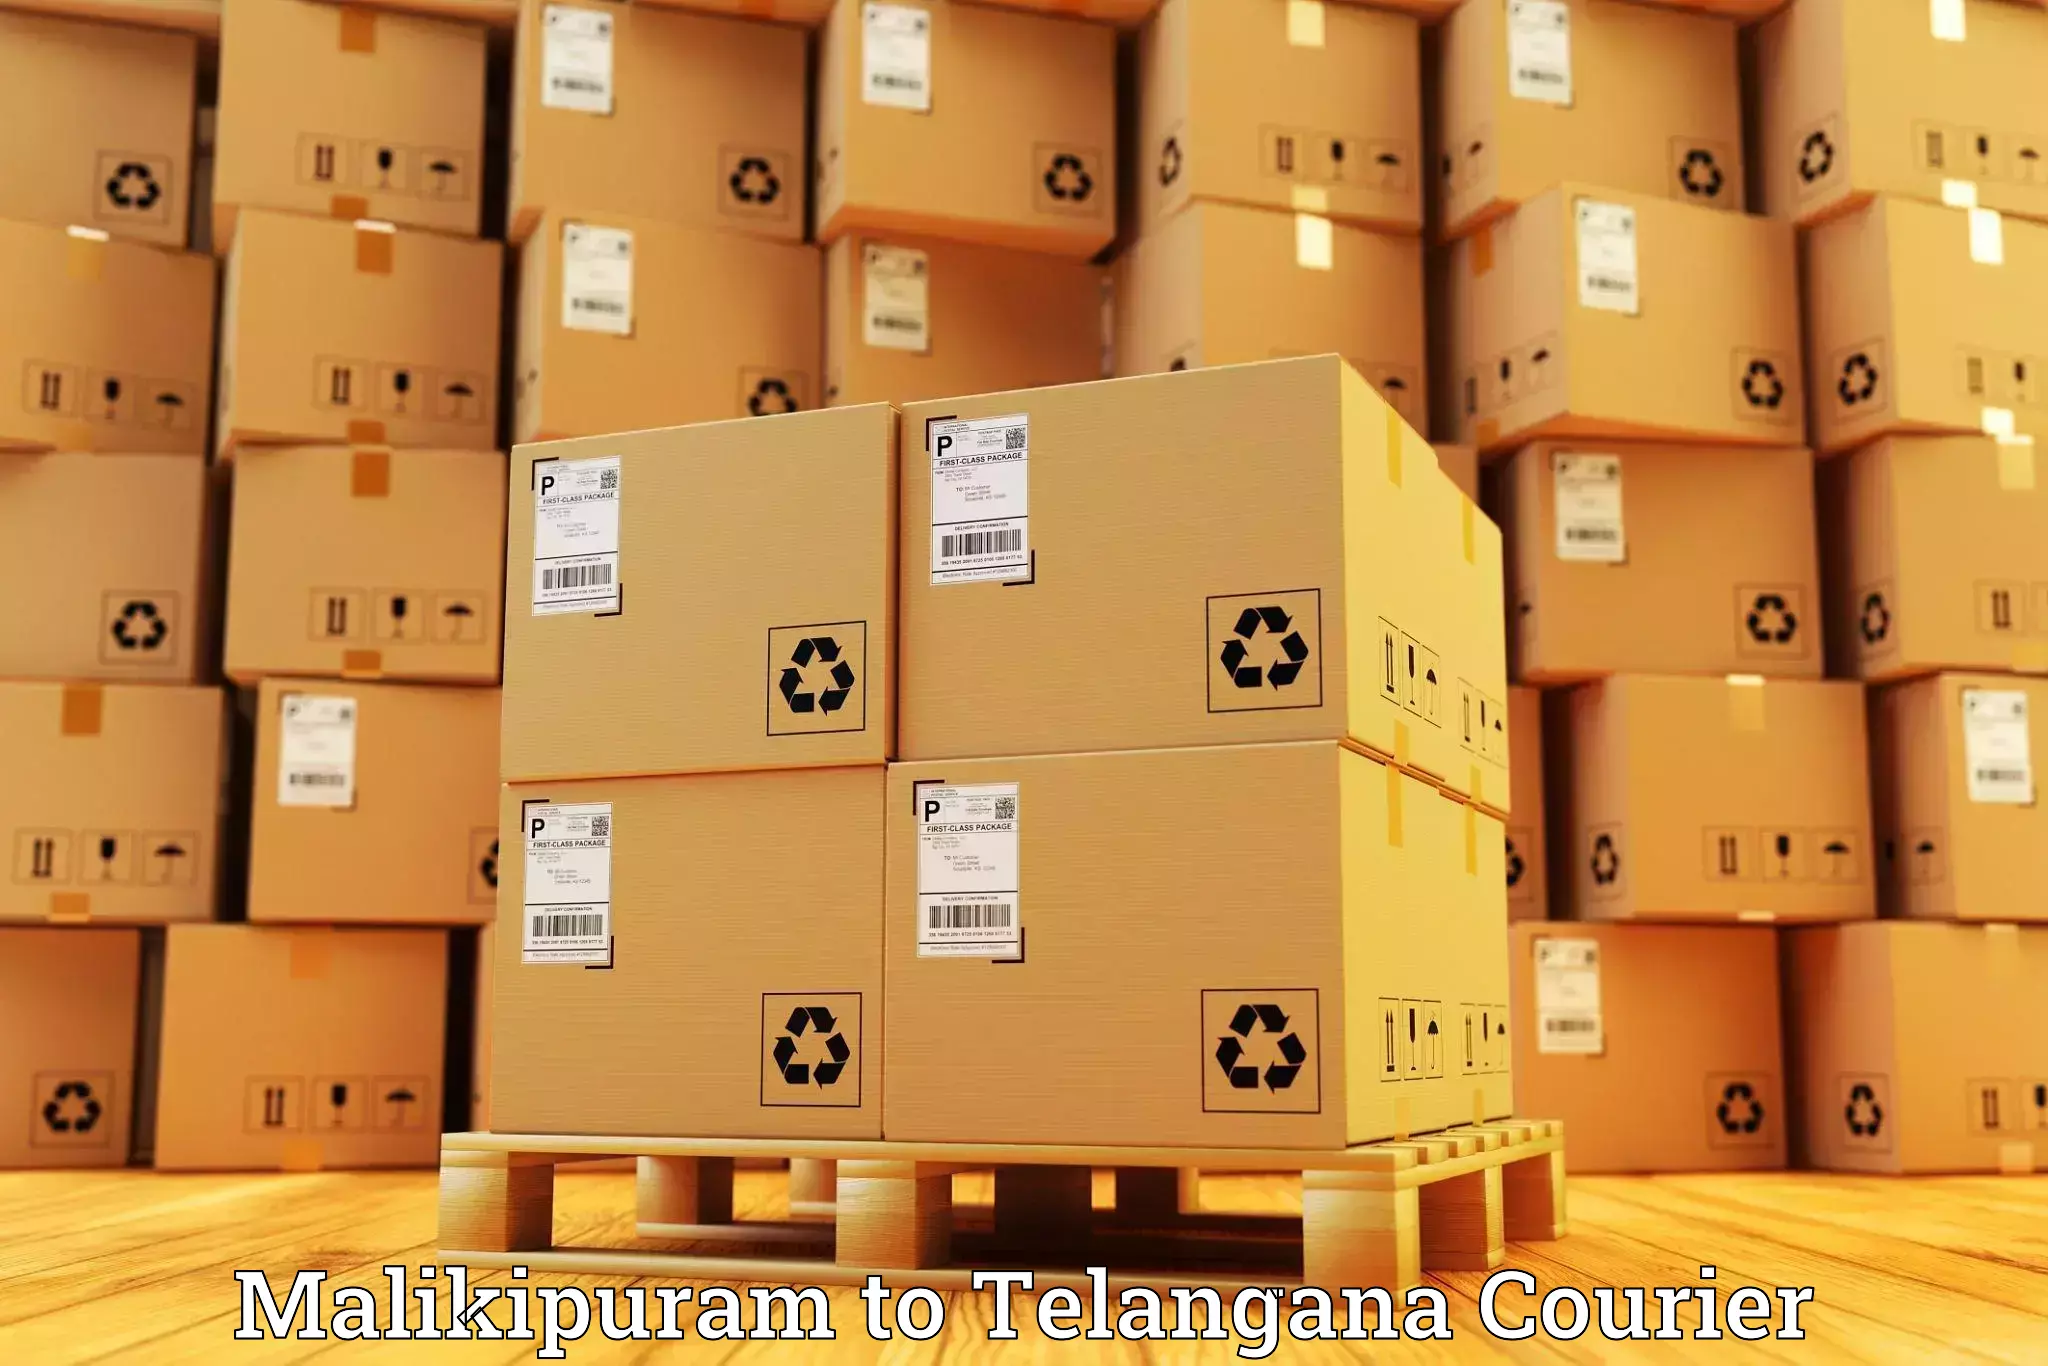 Nationwide shipping services Malikipuram to Secunderabad